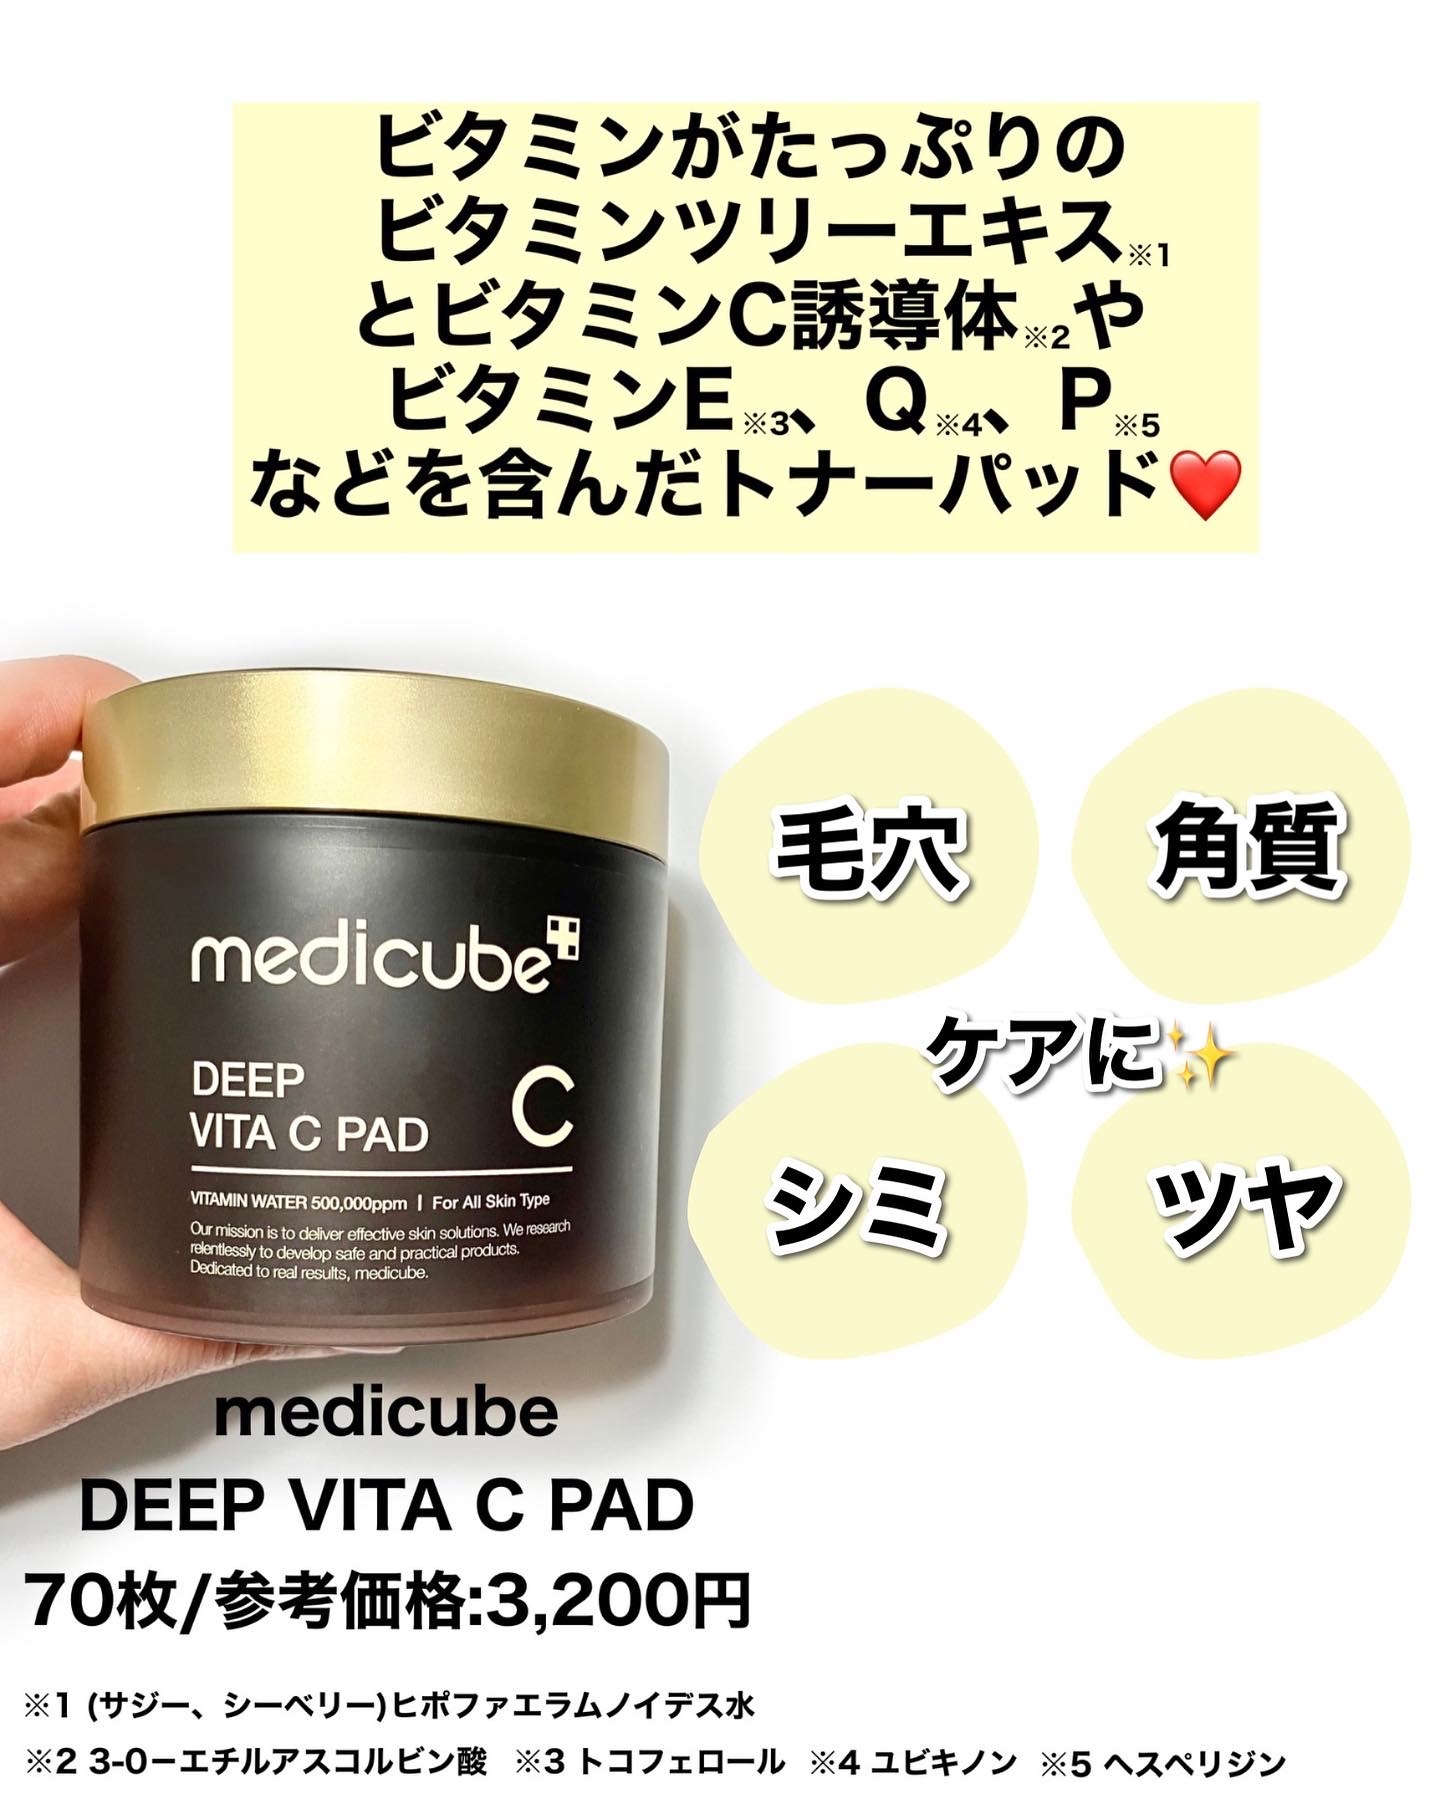 medicube(メディキューブ)
DEEP VITA C PAD(ディープビタCパッド)の良い点・メリットに関するぶるどっくさんの口コミ画像2